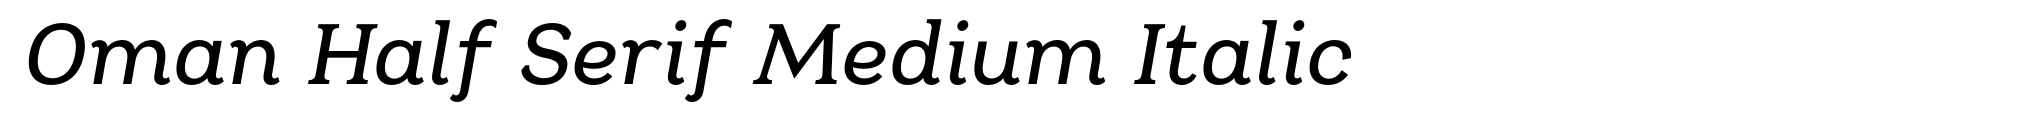 Oman Half Serif Medium Italic image